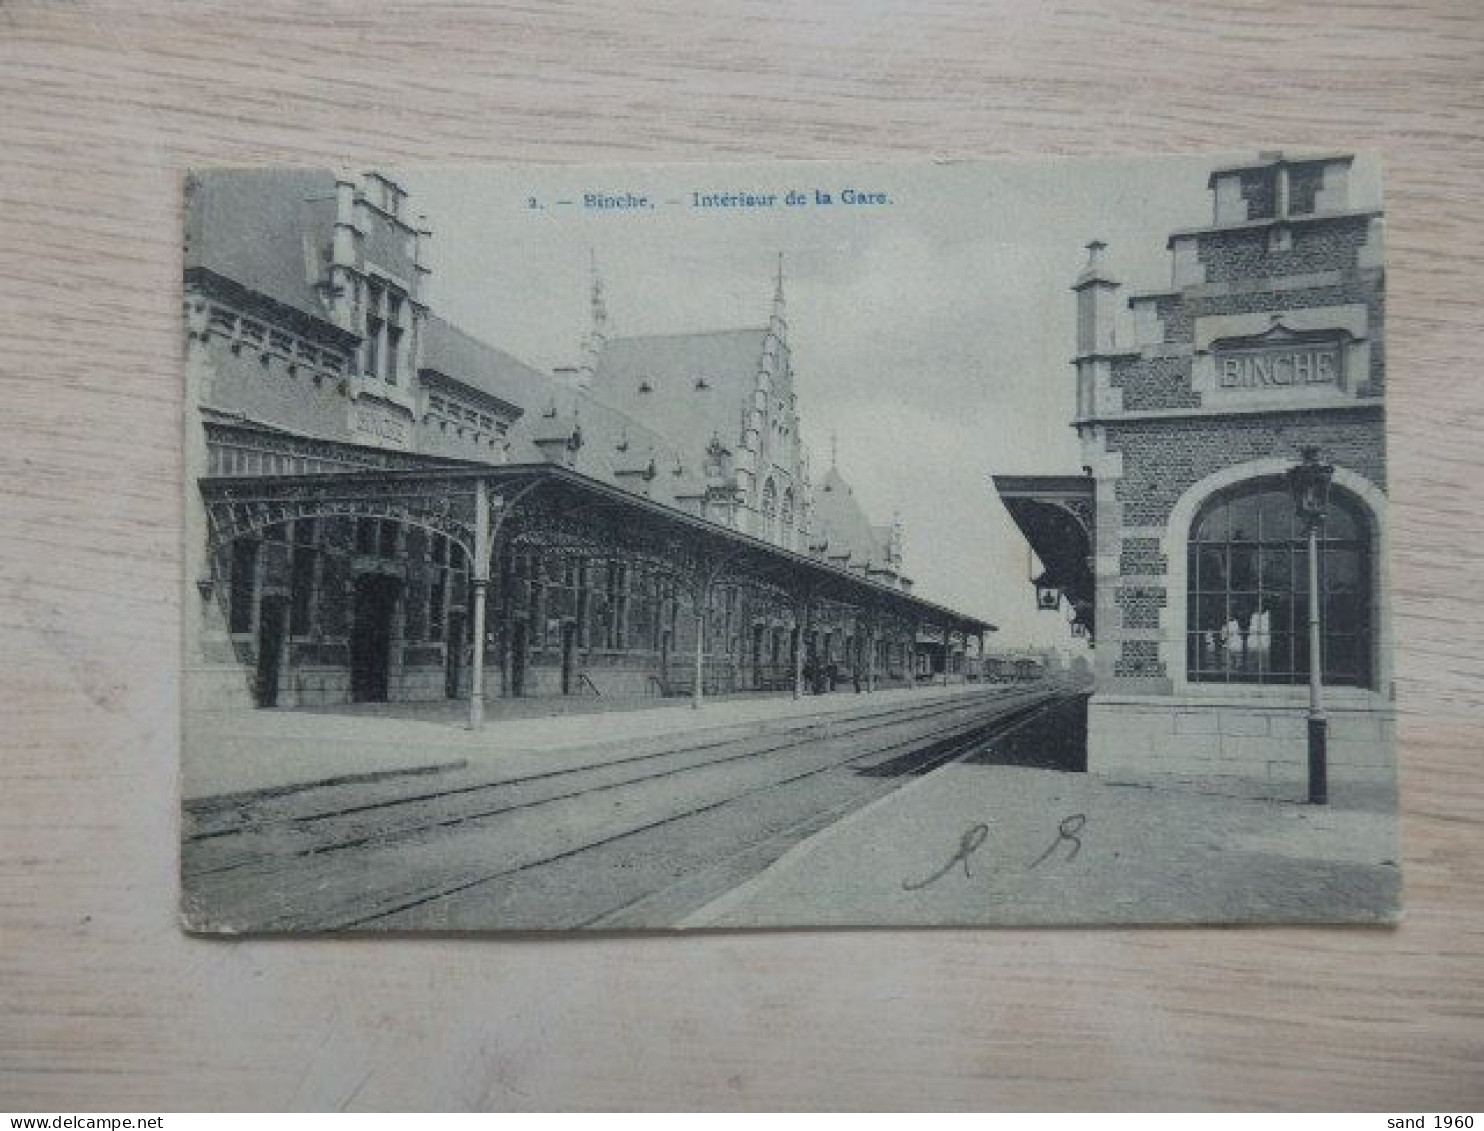 BINCHE "Hainaut" * N°2 - Intérieur De La Gare - Ph: Bertels - Circulé - 2 Scans. - Binche